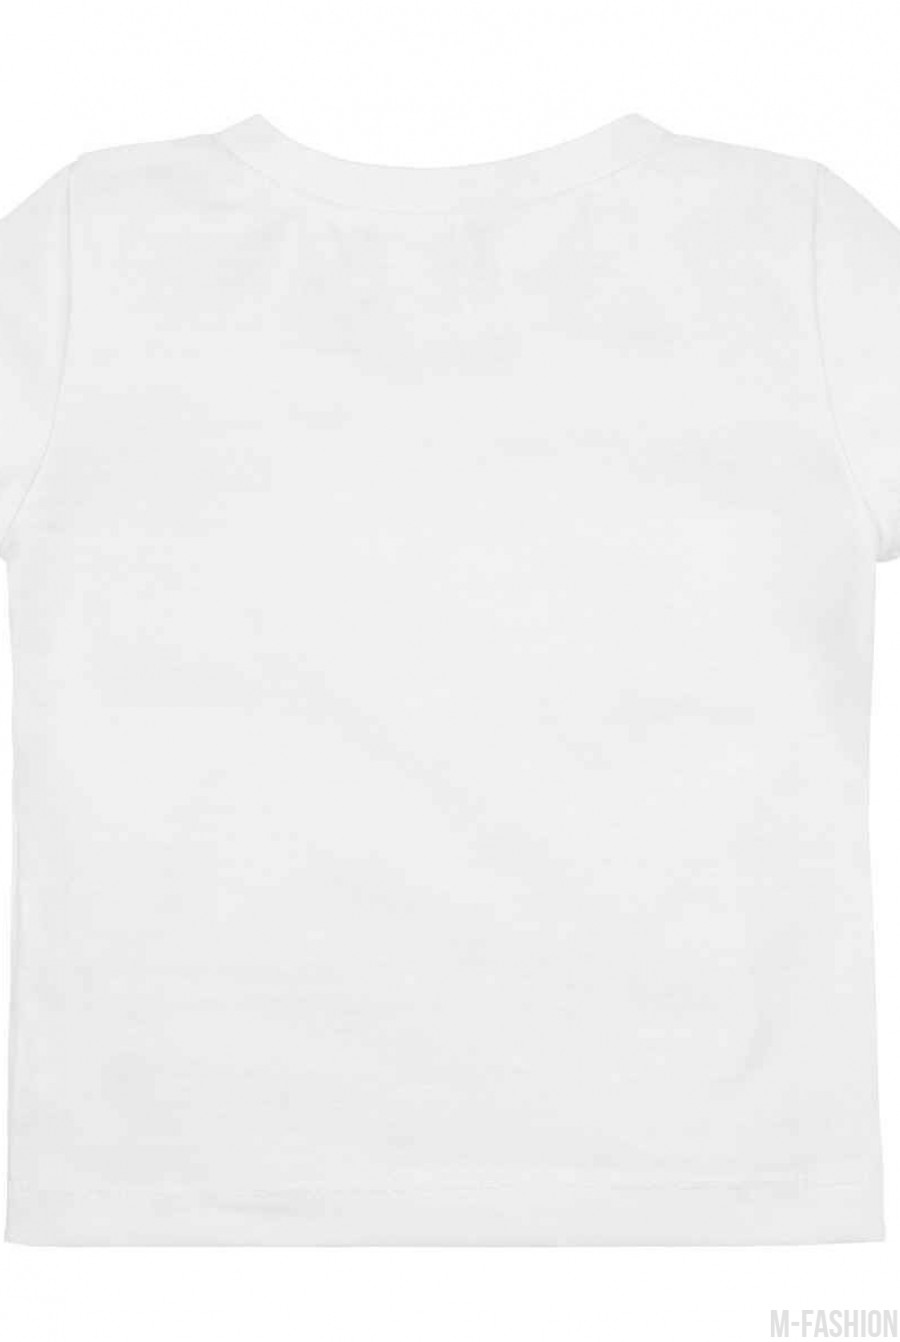 Белая трикотажная футболка с возможностью индивидуальной печати фамилии на принте- Фото 3